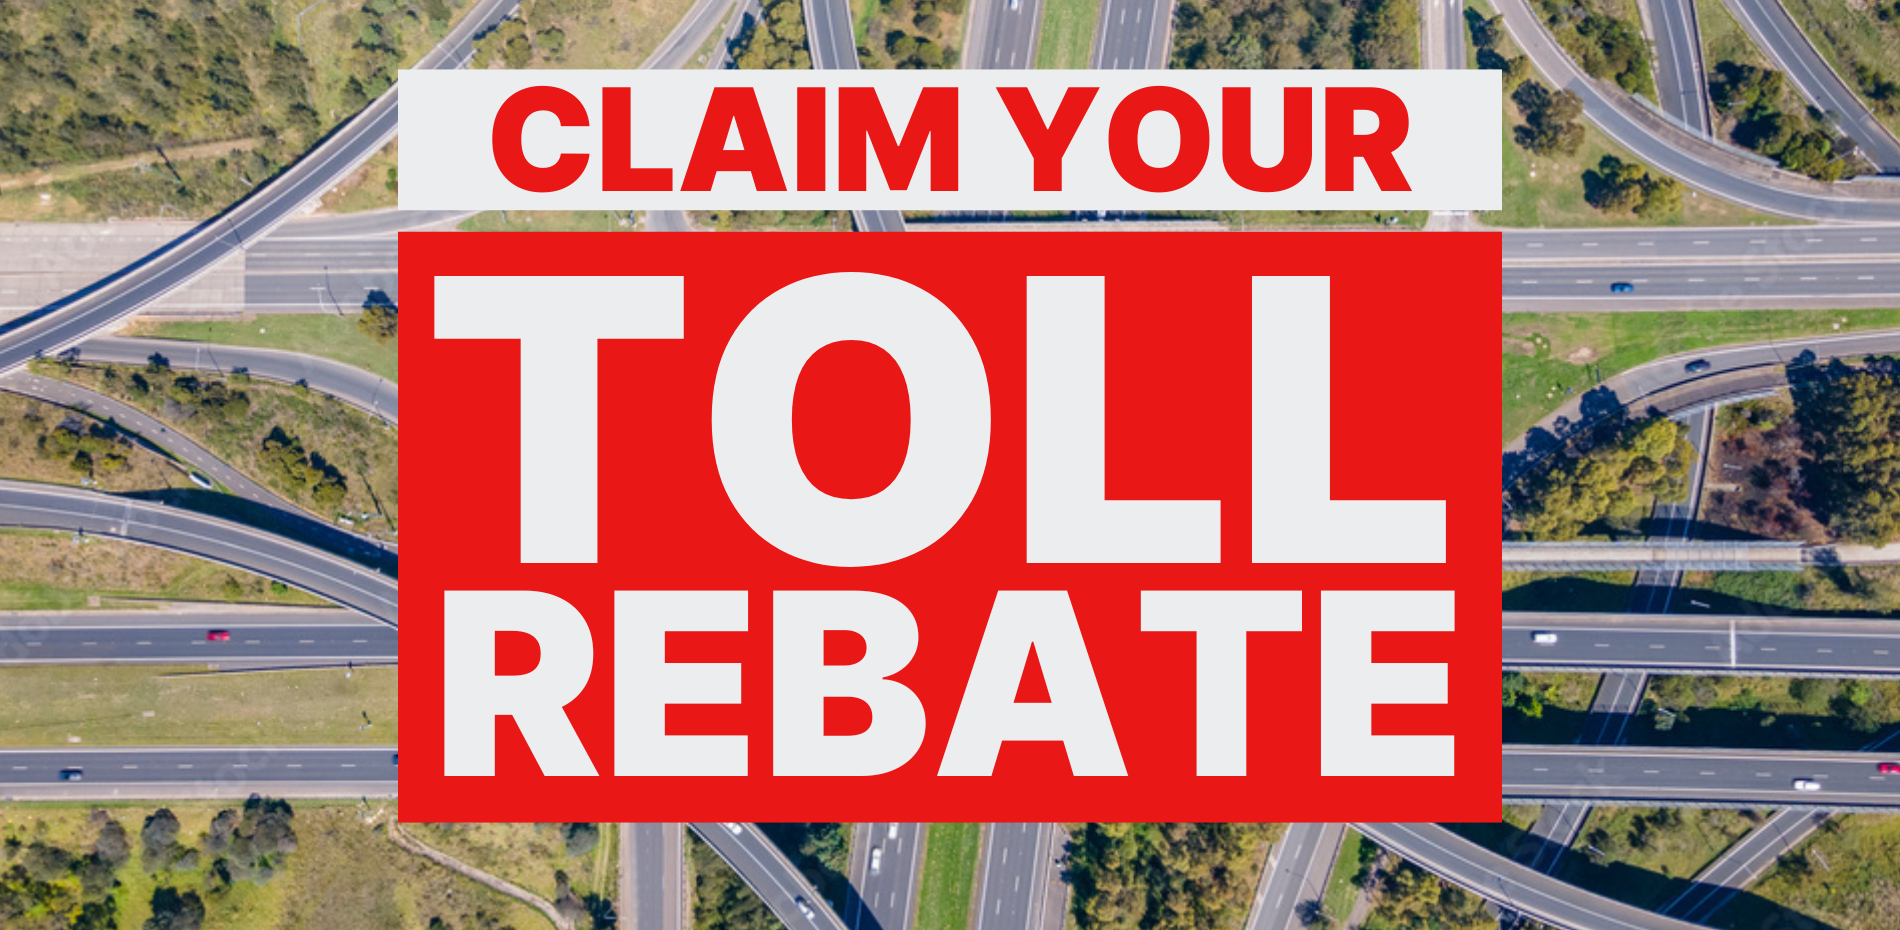 Claim Your Toll Rebate Main Image